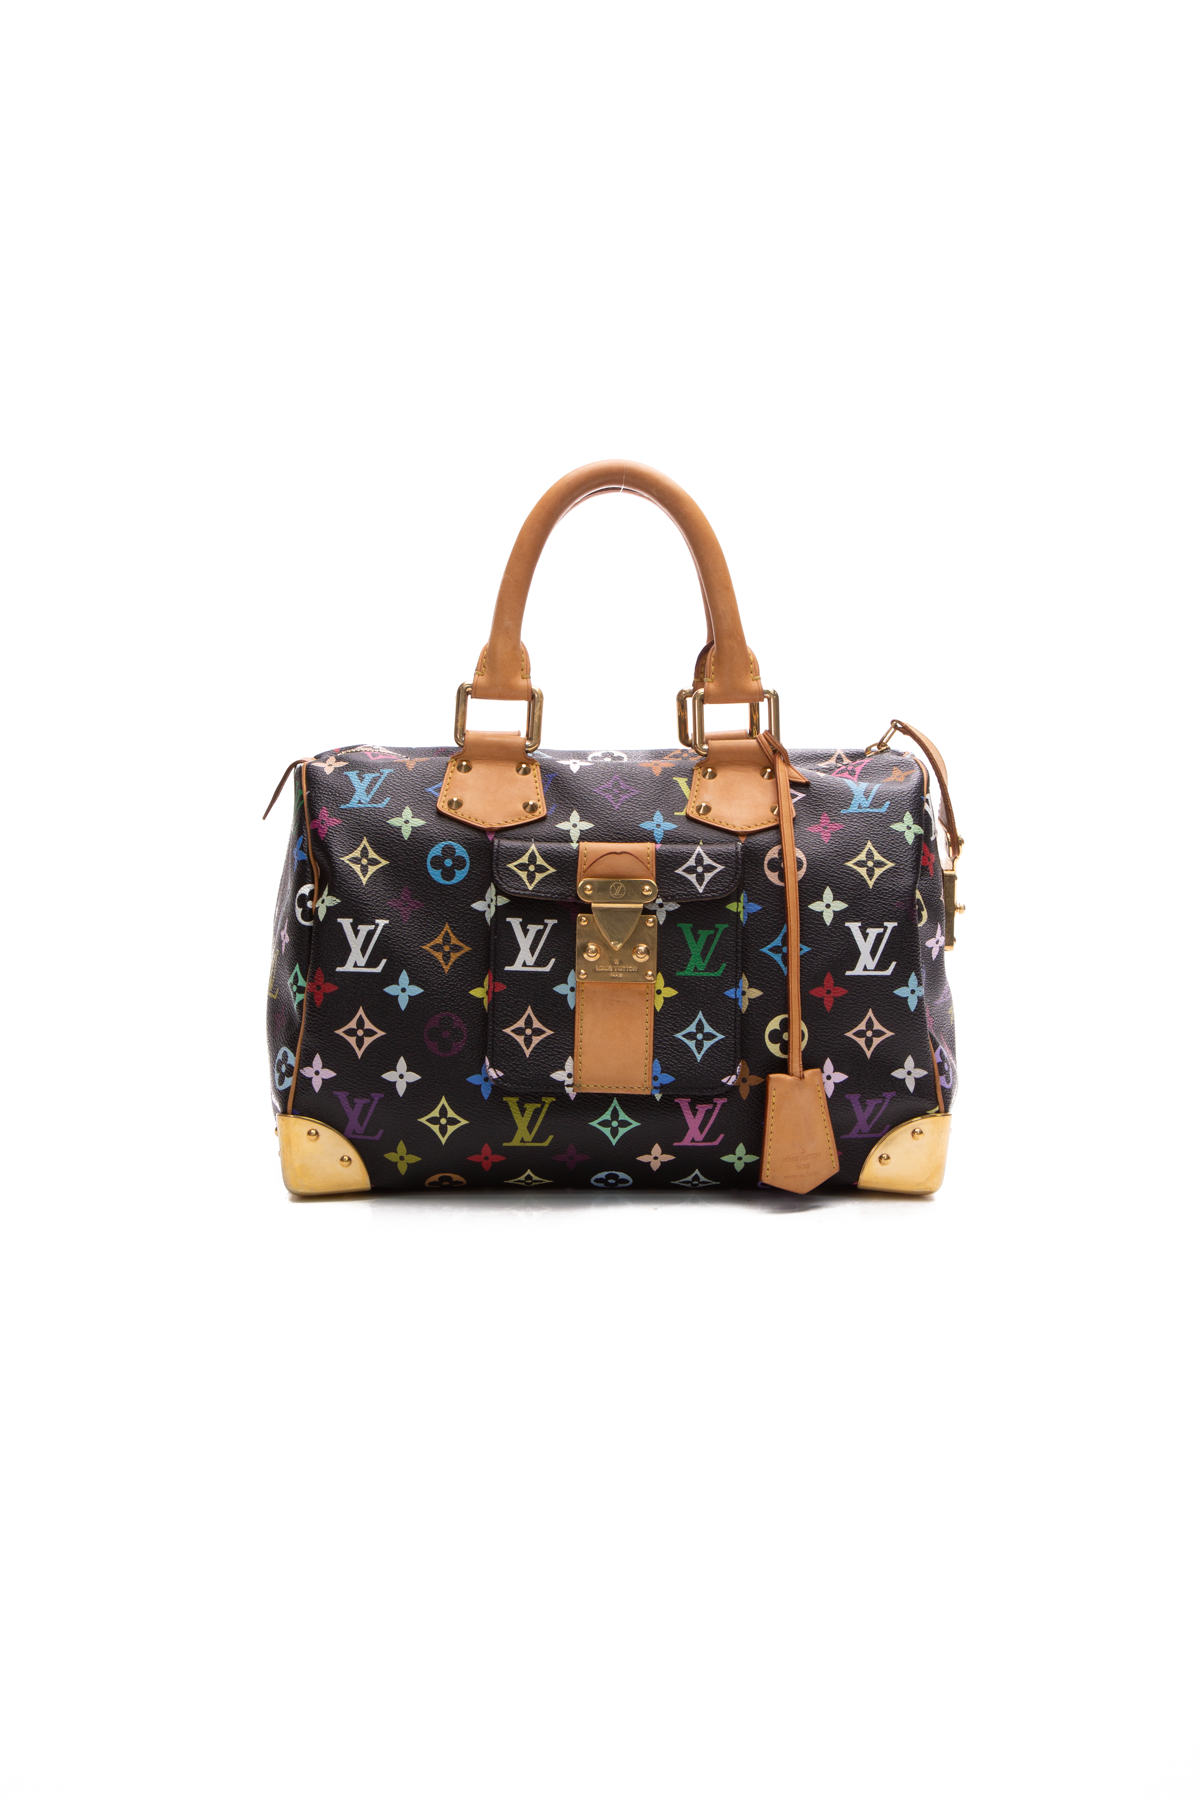 Louis Vuitton Speedy 30 Bag - Couture USA